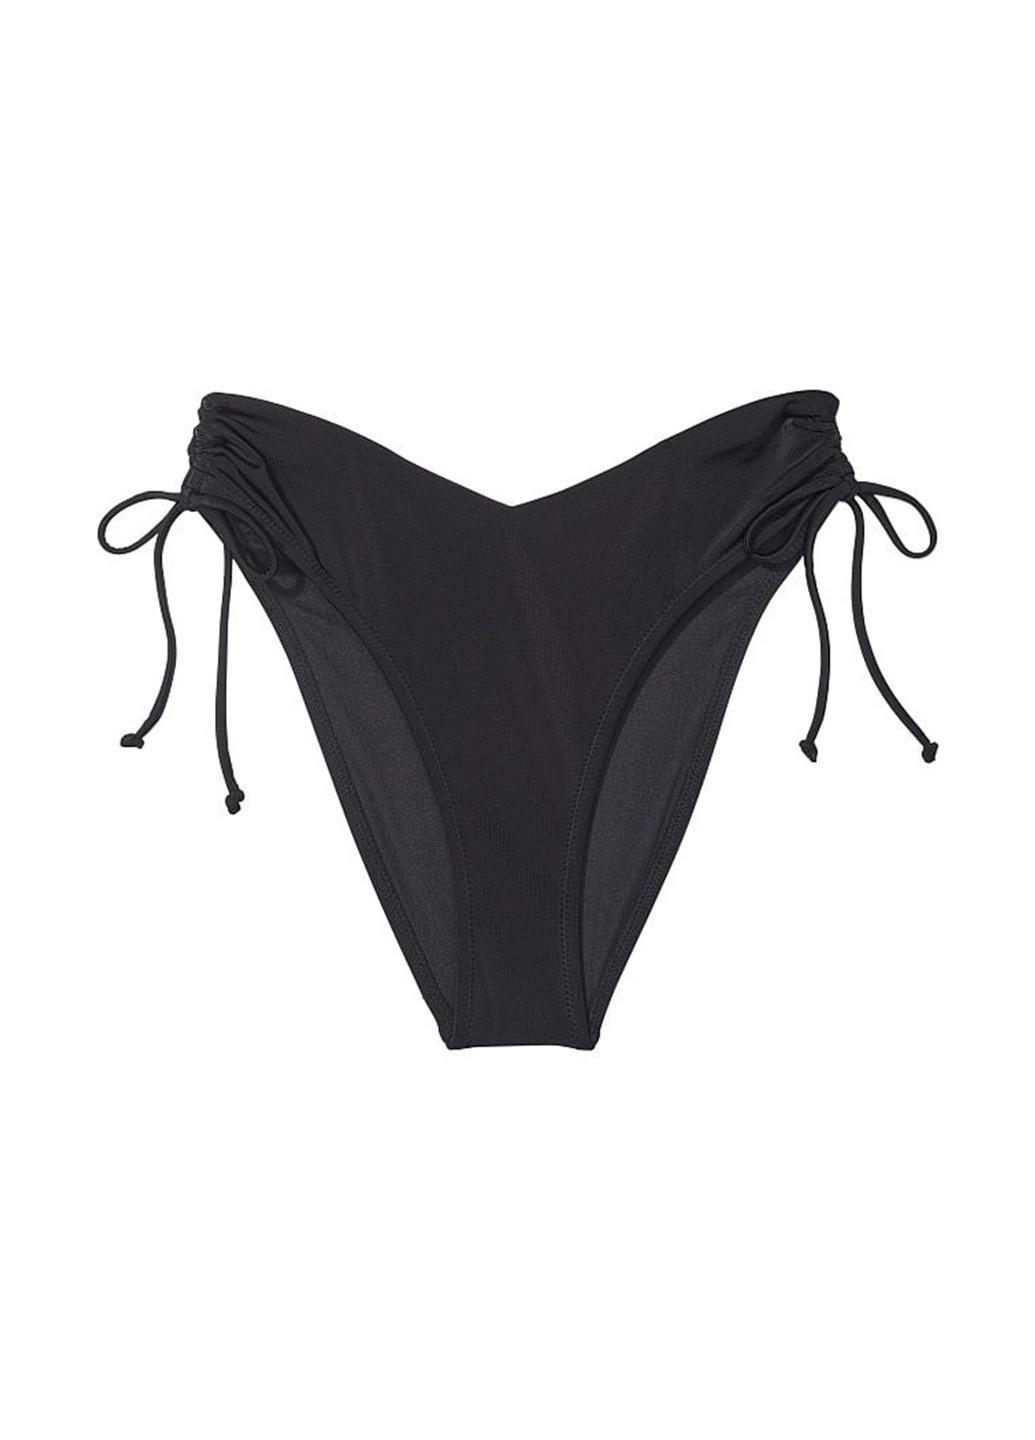 Черный летний купальник (лиф, трусы) раздельный Victoria's Secret